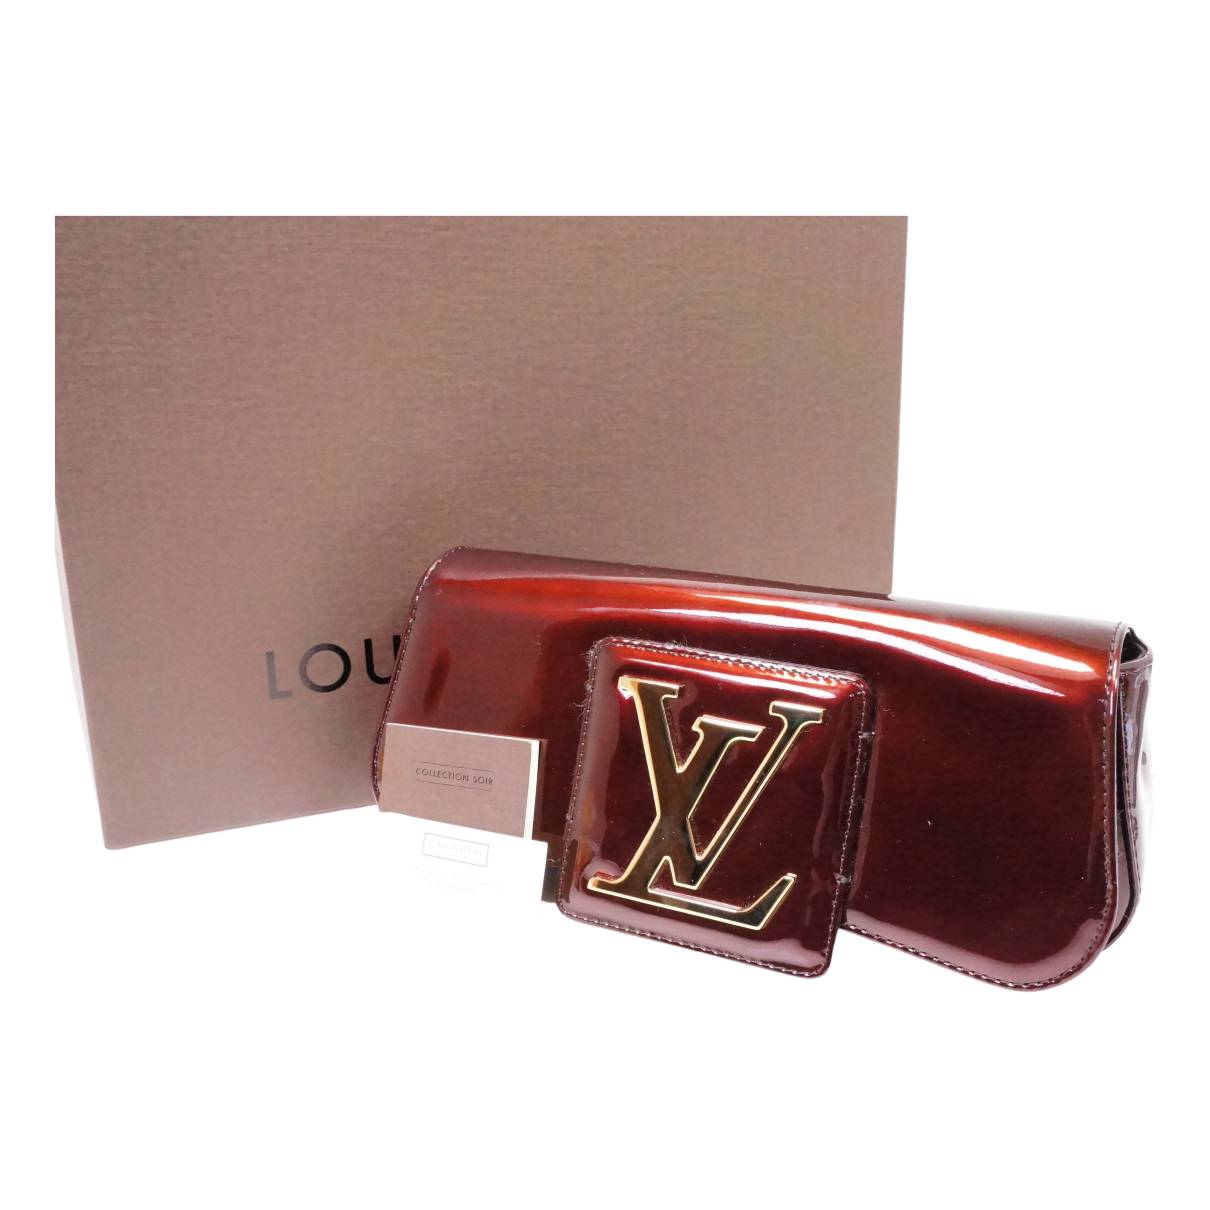 Louis Vuitton Sobe Clutch Bordeaux Patent Leather